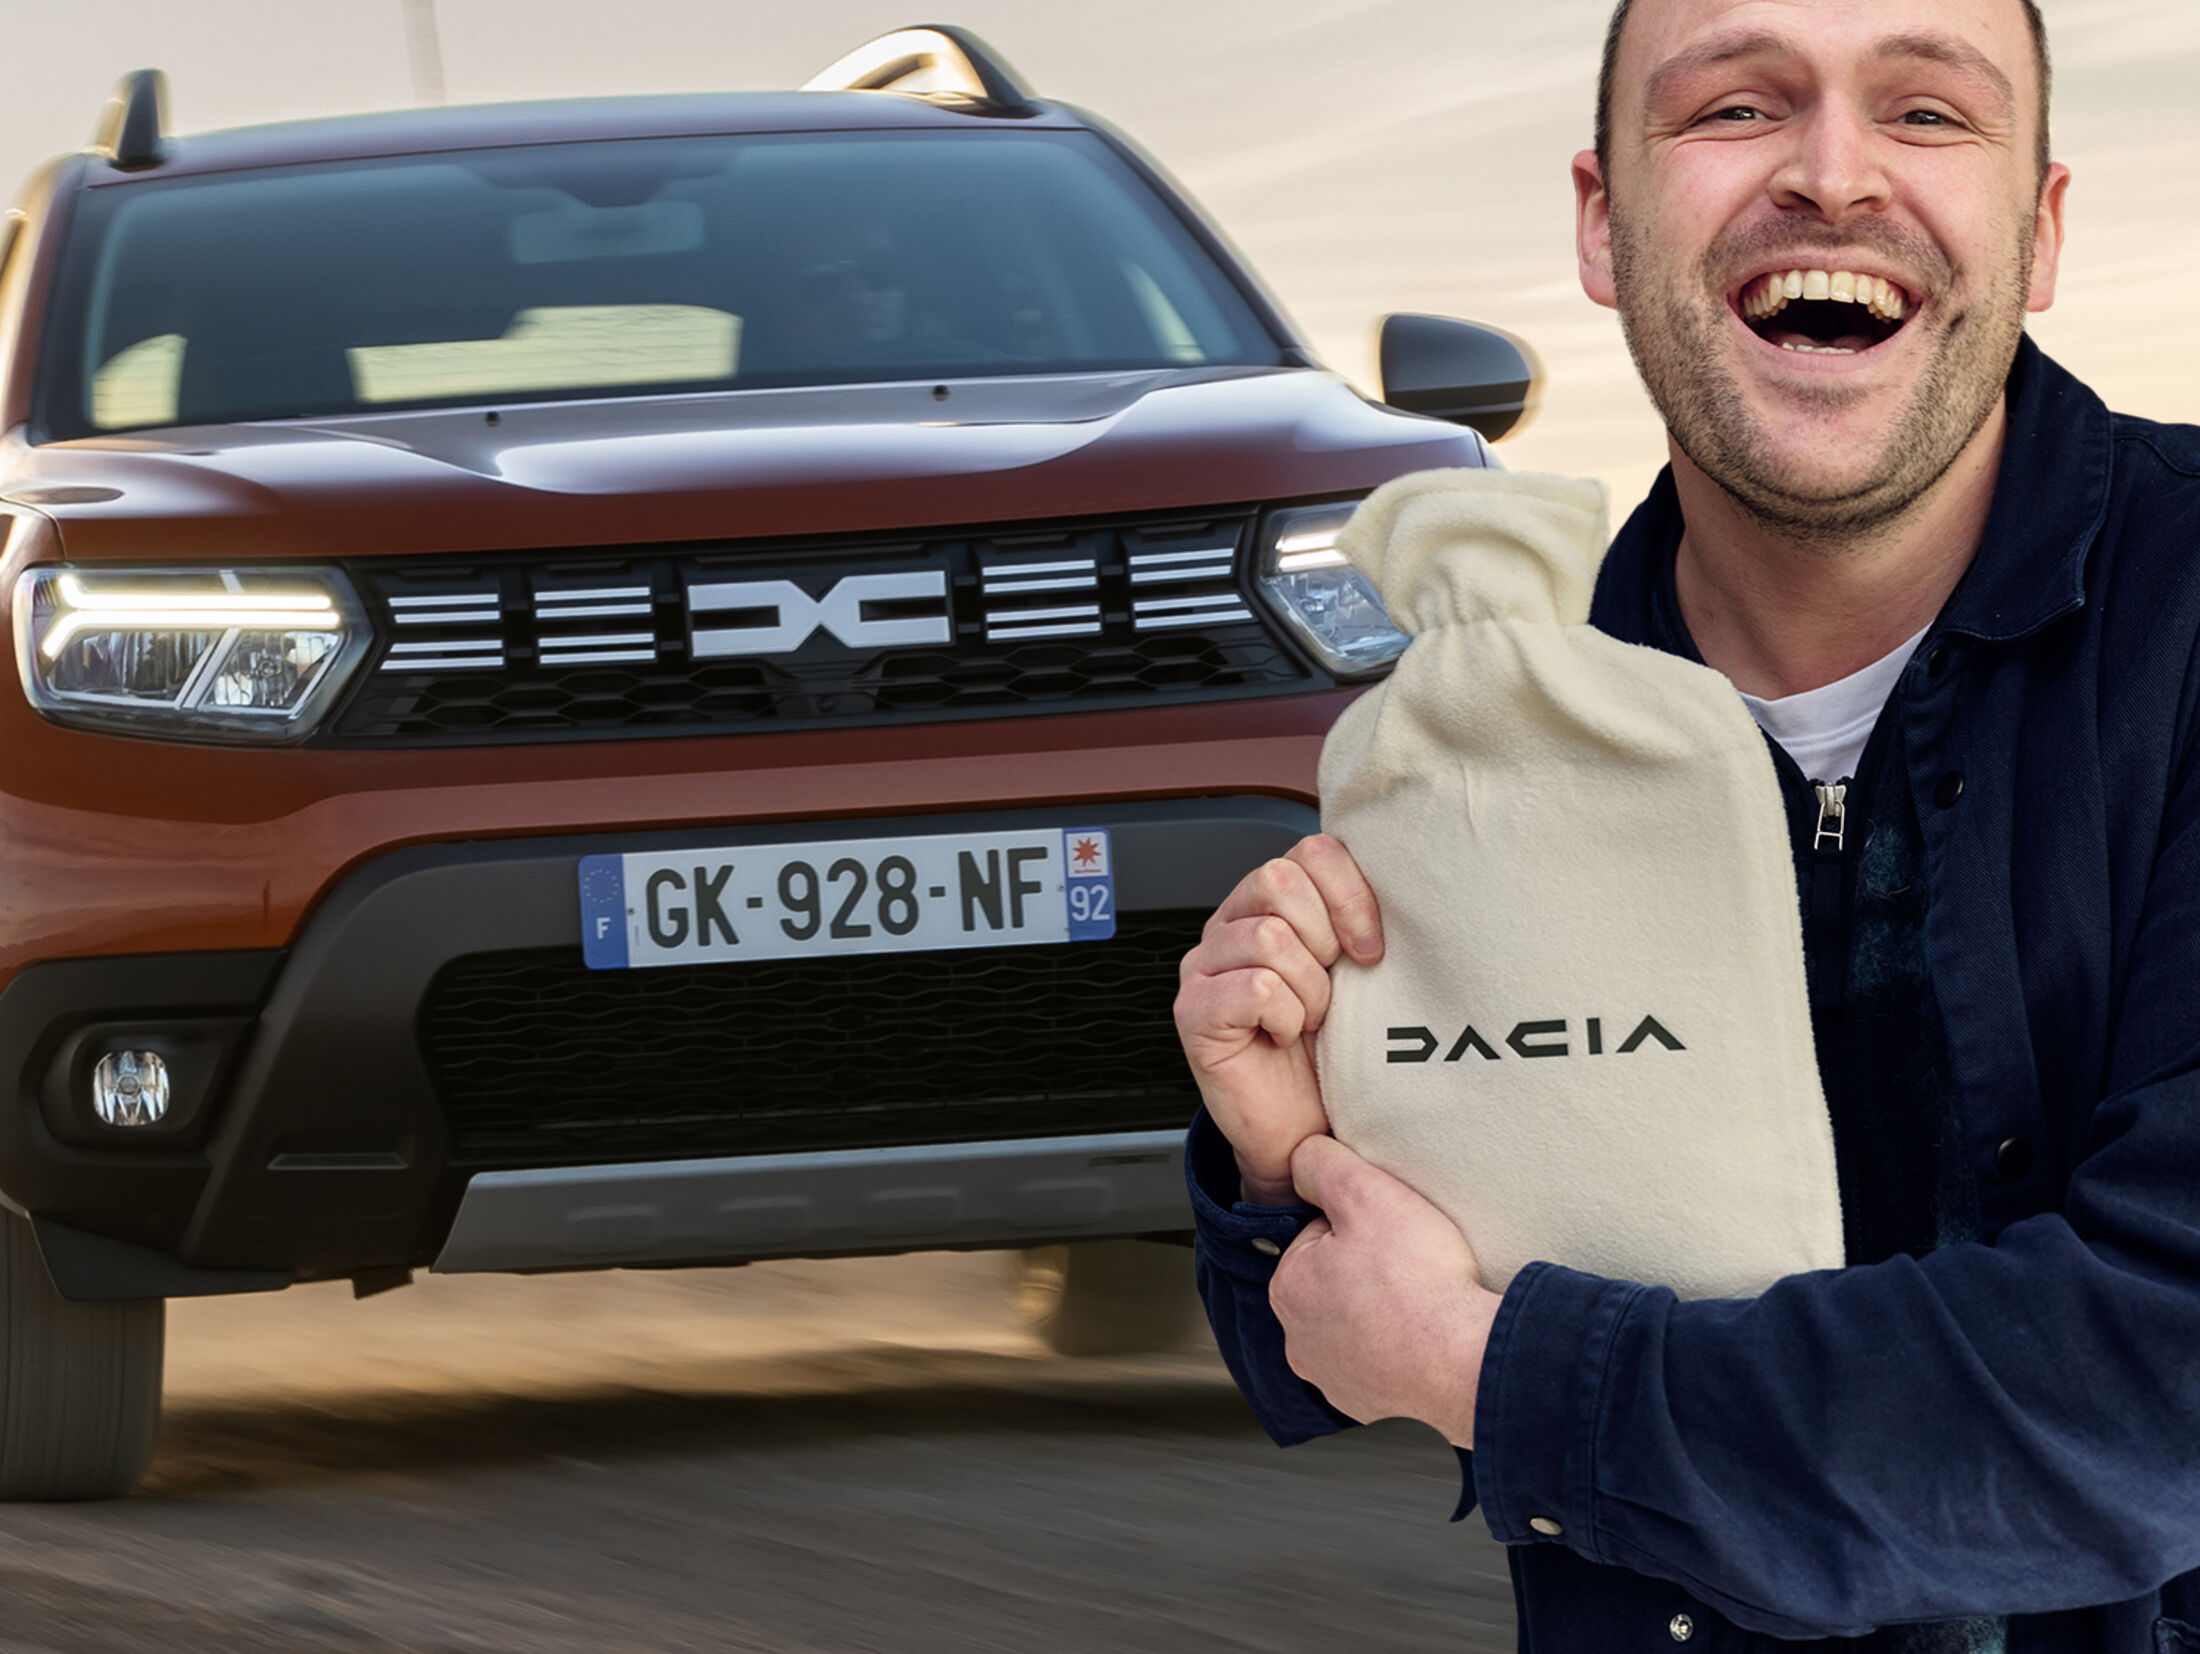 Gratis Sitzheizung: Dacia stichelt gegen Premium-Hersteller